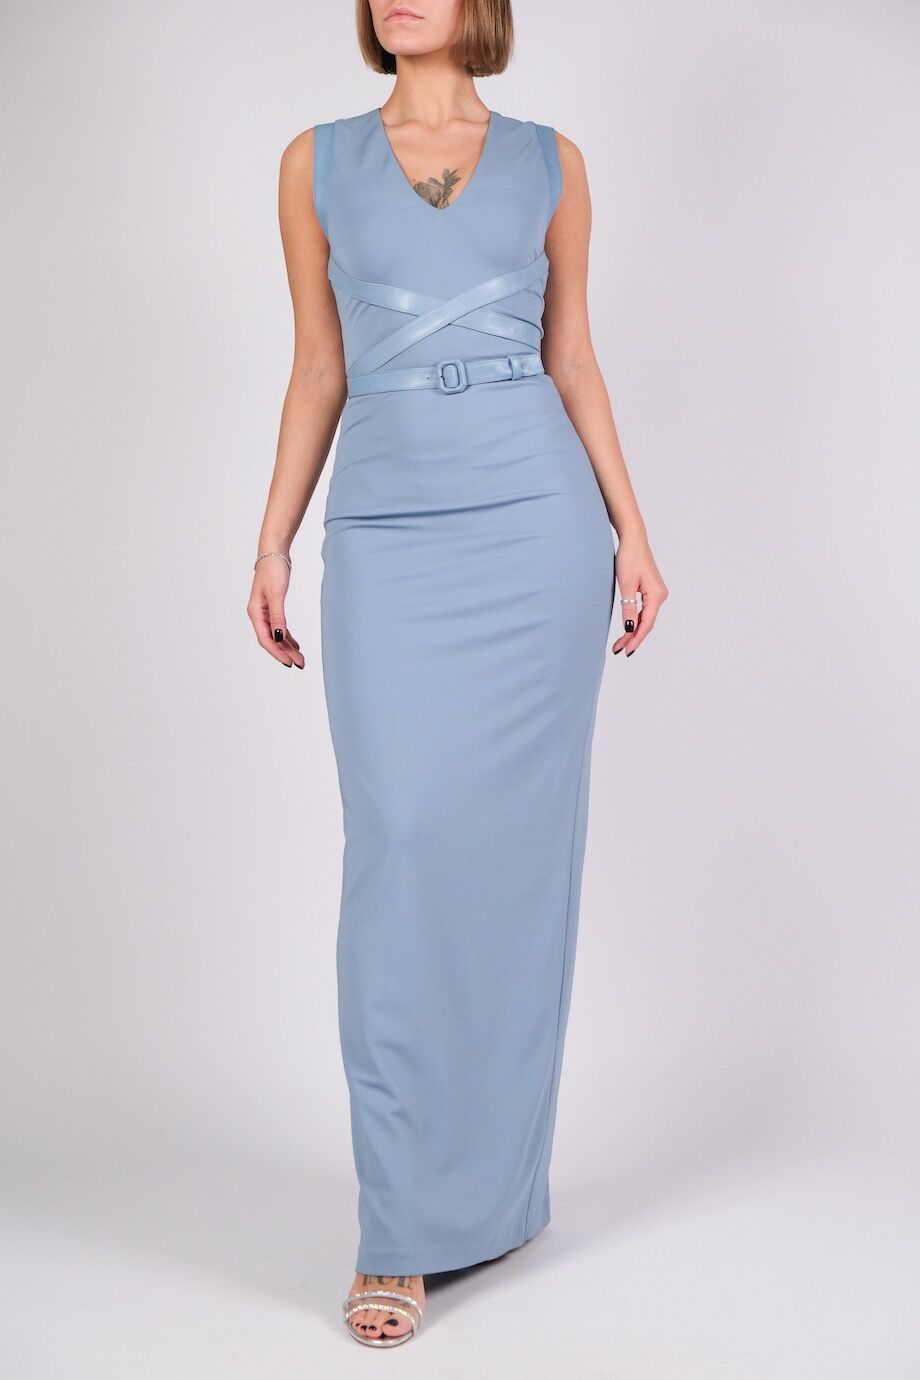 image 1 Платье в пол голубого цвета с кожаным поясом